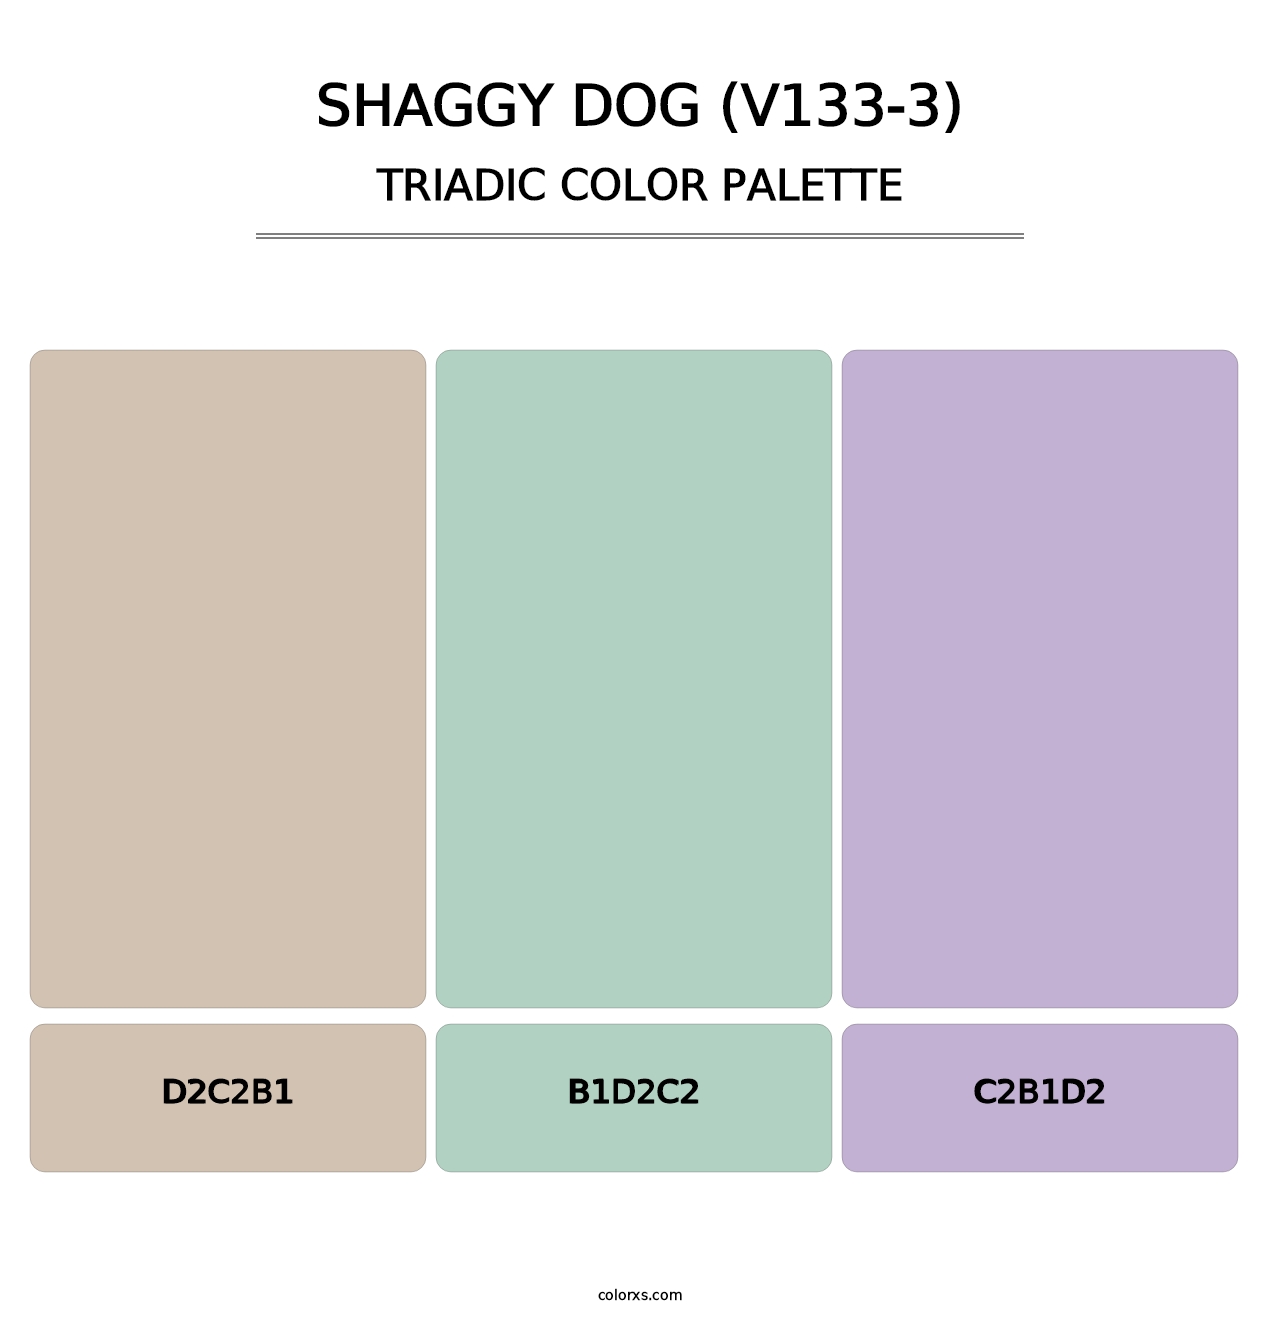 Shaggy Dog (V133-3) - Triadic Color Palette